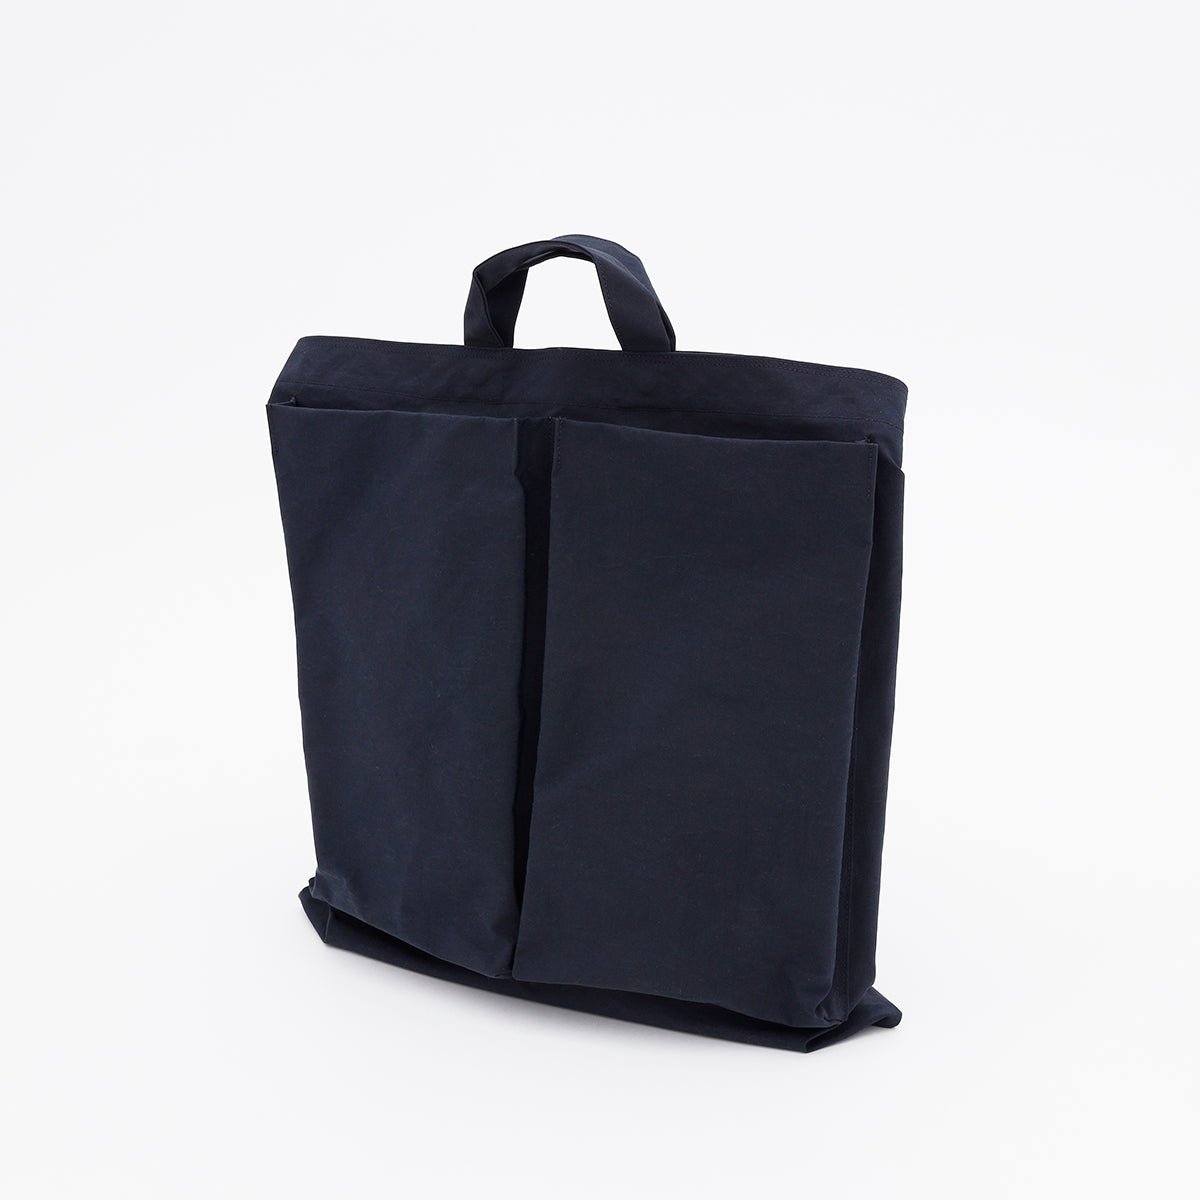 ITTI (イッチ) | ANNIE HELMET VEGETABLE BAG / CERATO WR(アニーヘルメットベジタブルバッグ) メンズ レディース トート 鞄